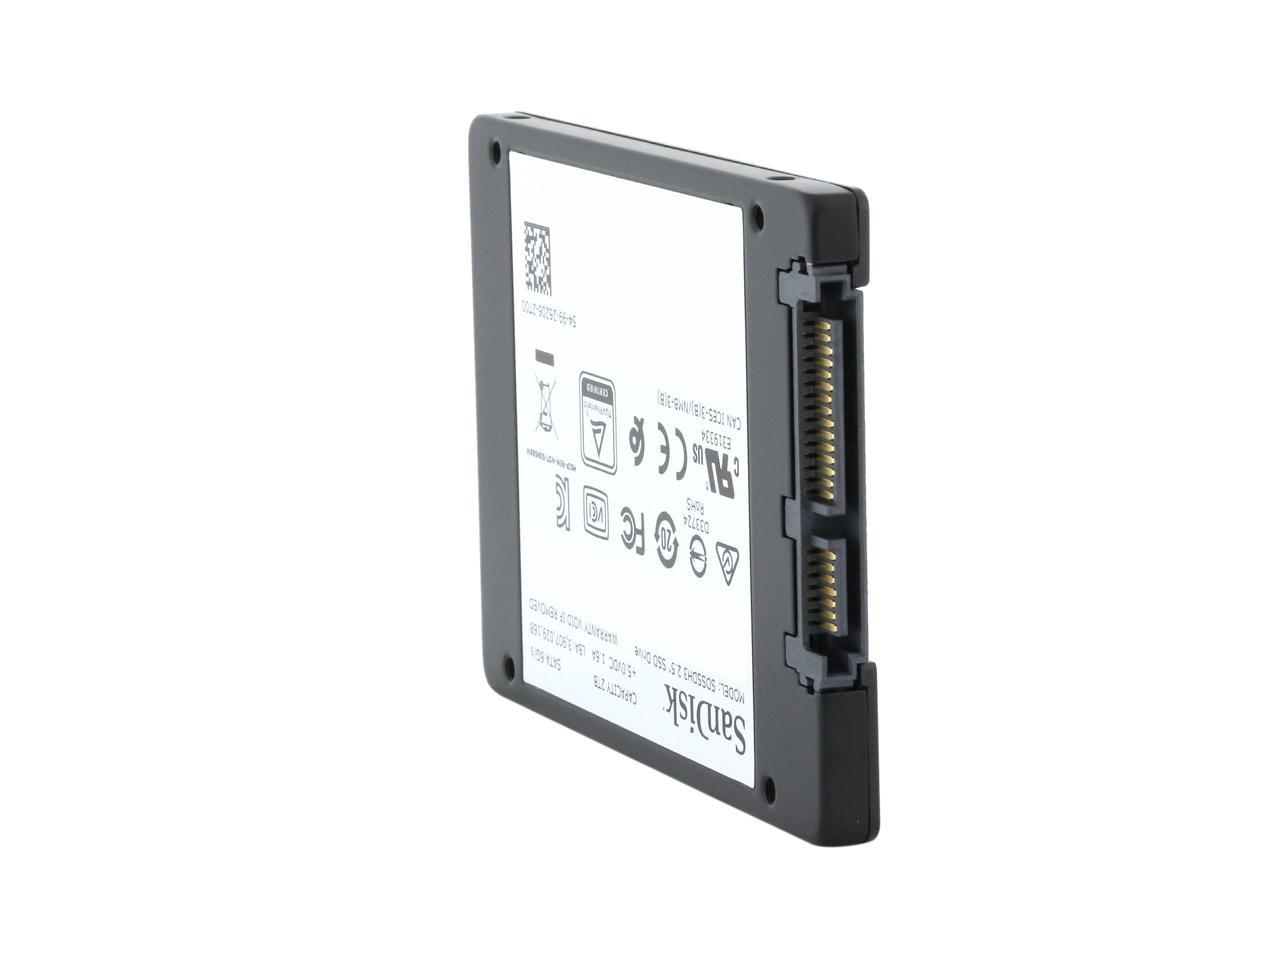 SDSSDH3-2T00-G25 2.5/7mm SATA III 6 Gb/s SanDisk Ultra 3D NAND 2TB Internal SSD 